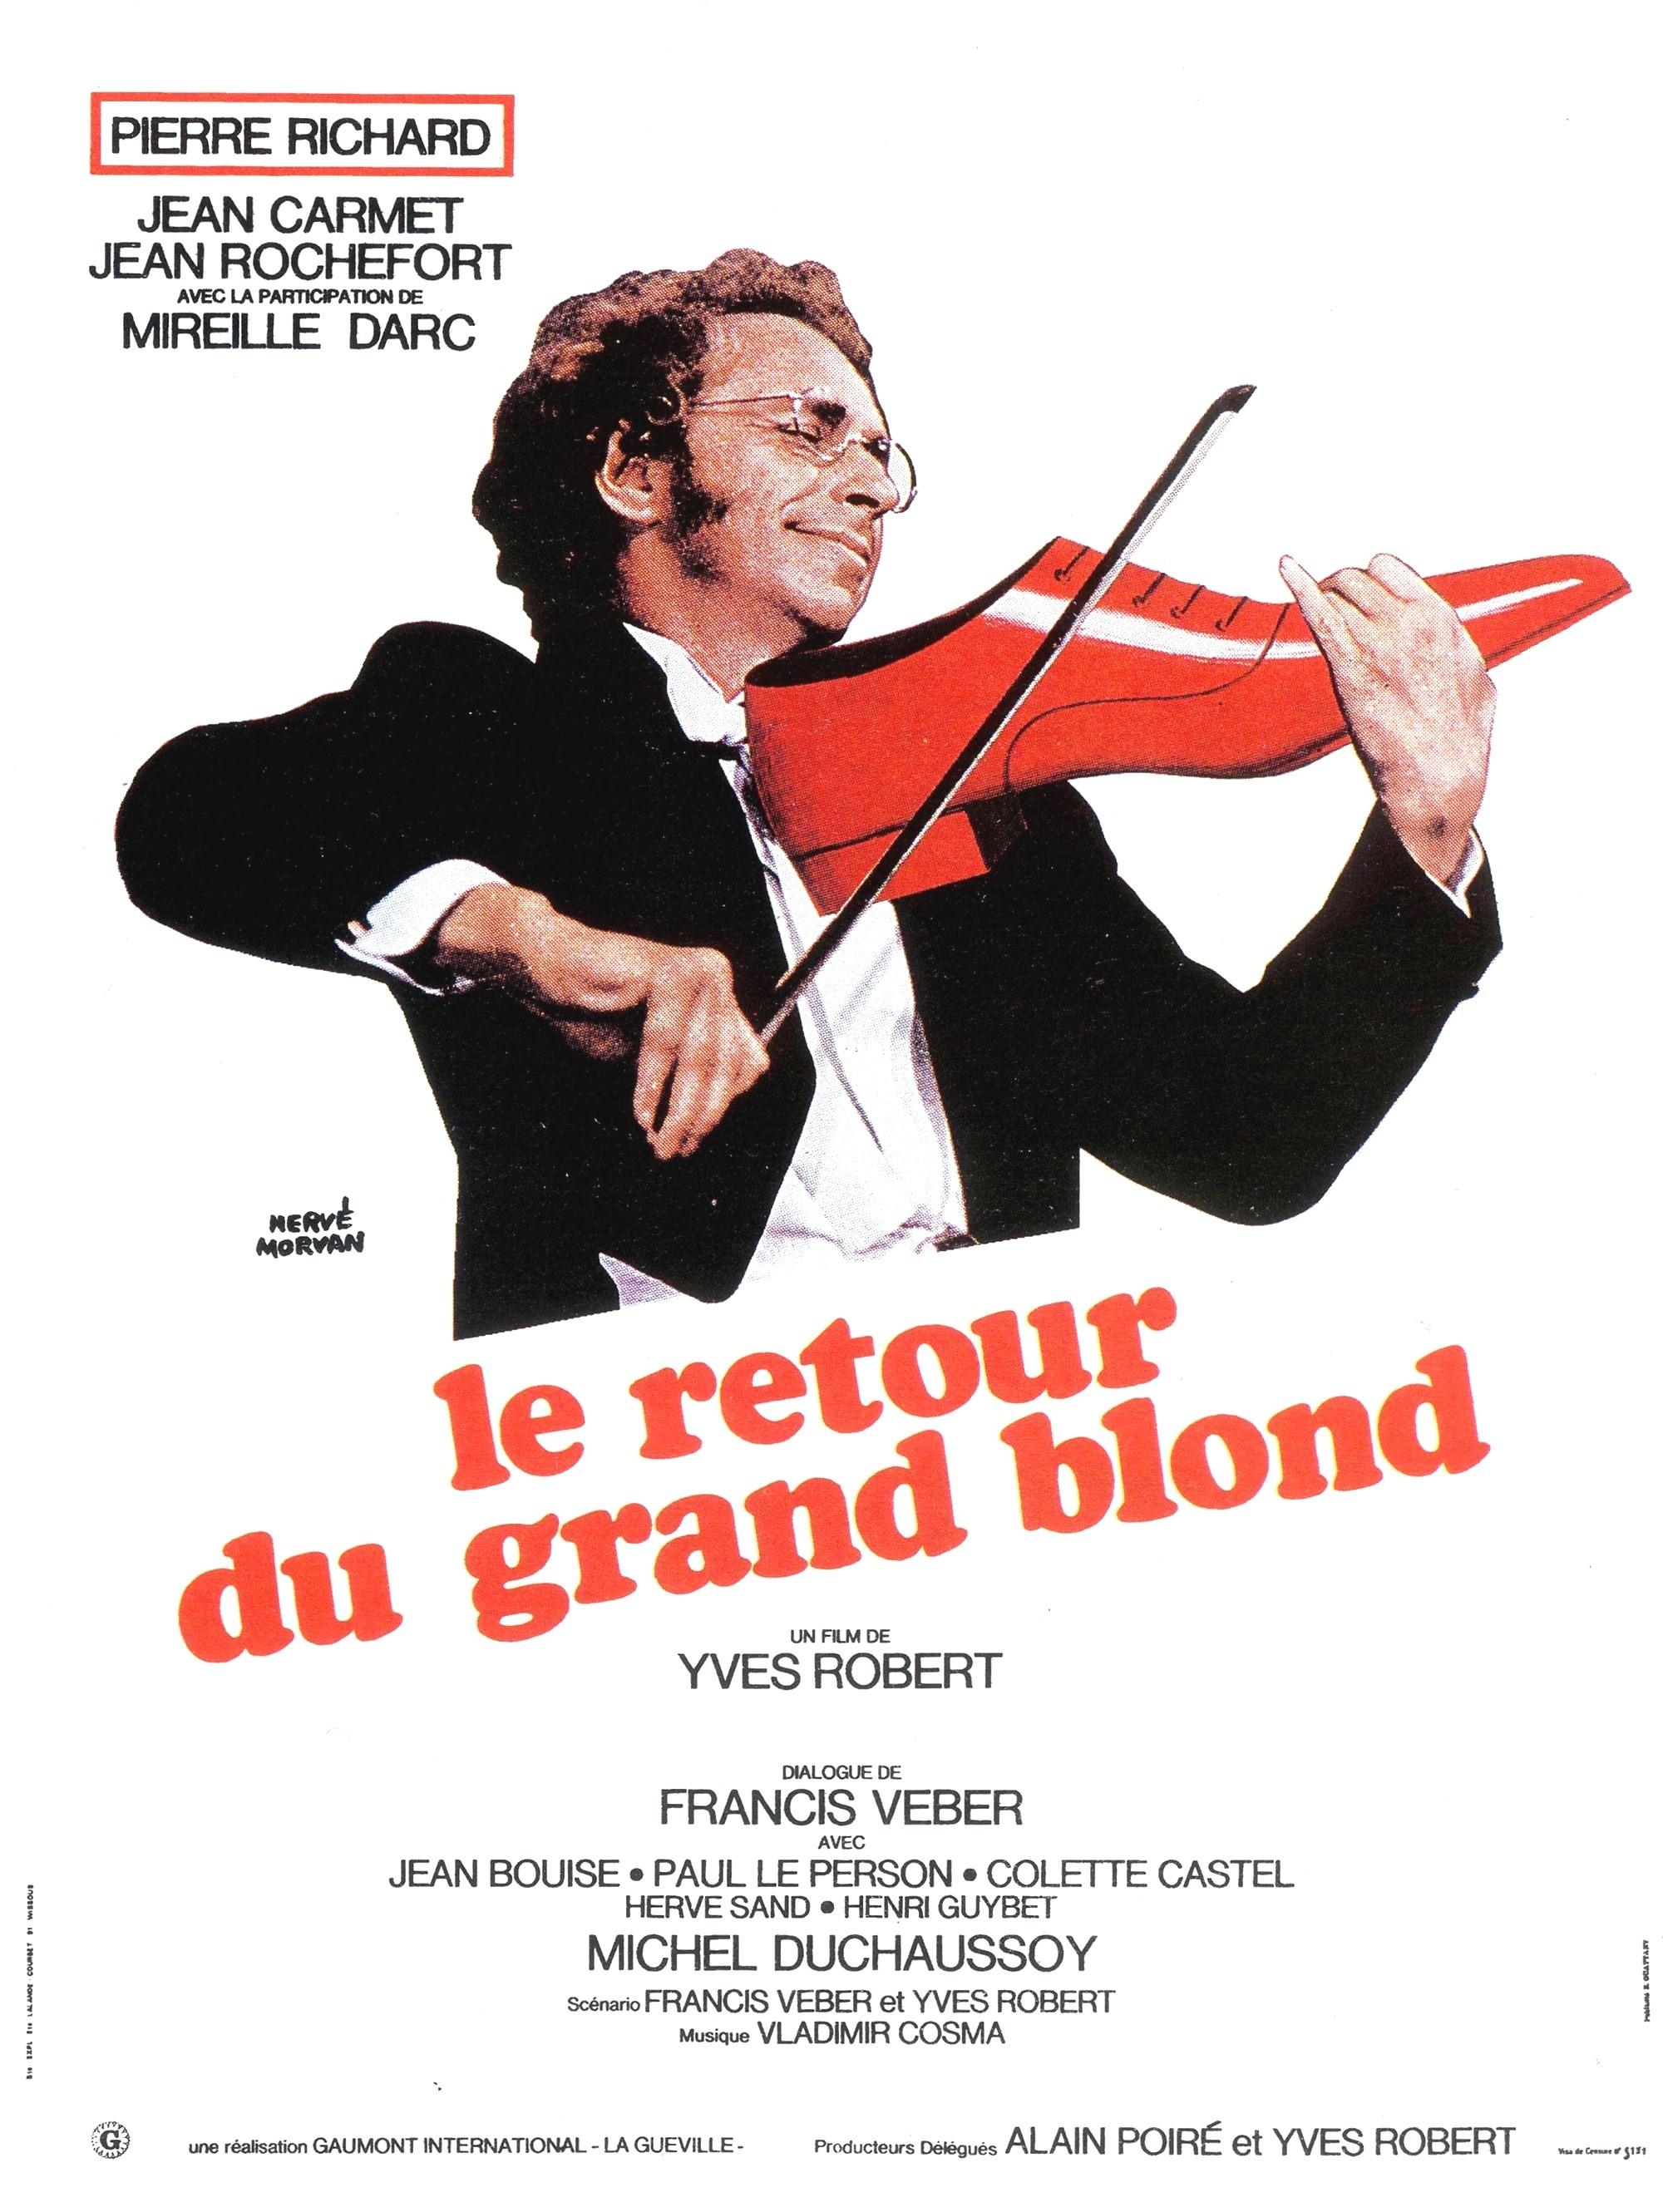 Пьер ришар зонтик. Пьер Ришар блондин в черном ботинке. Le retour du Grand blond 1974.